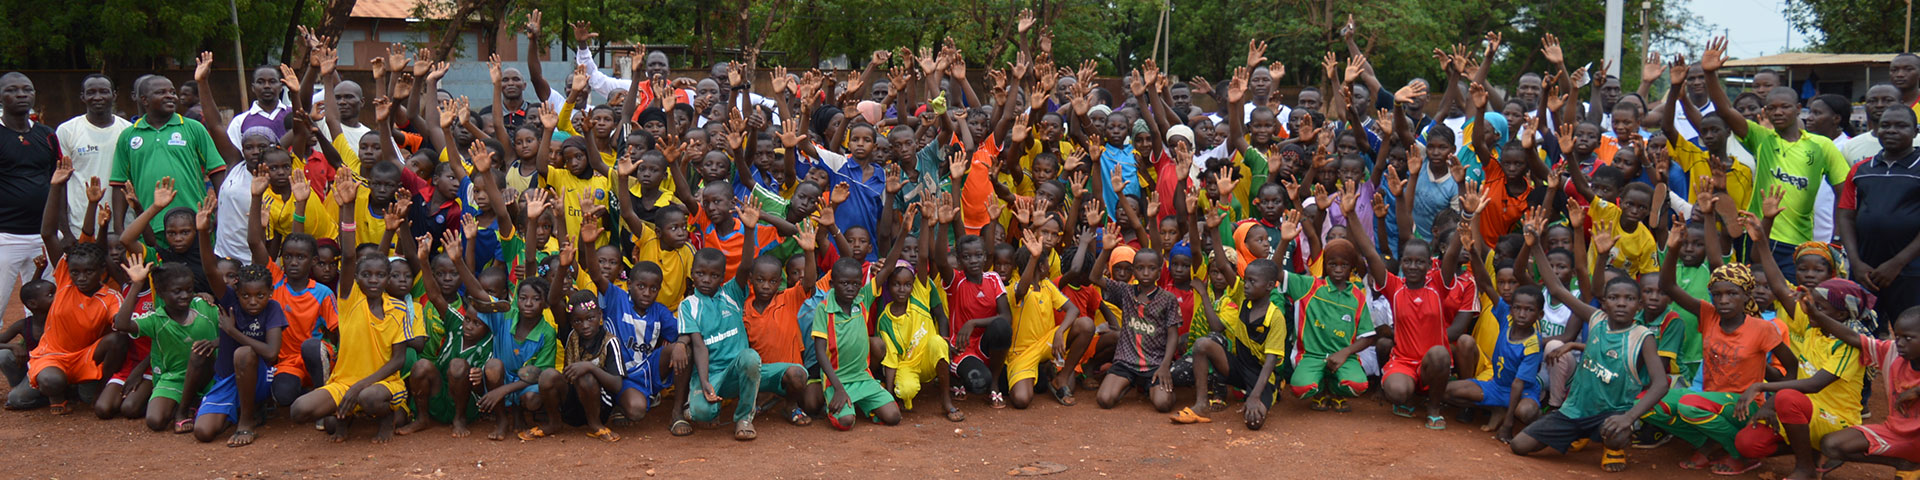 Viele Kinder in Sportkleidung haben sich für ein Gruppenbild versammelt.